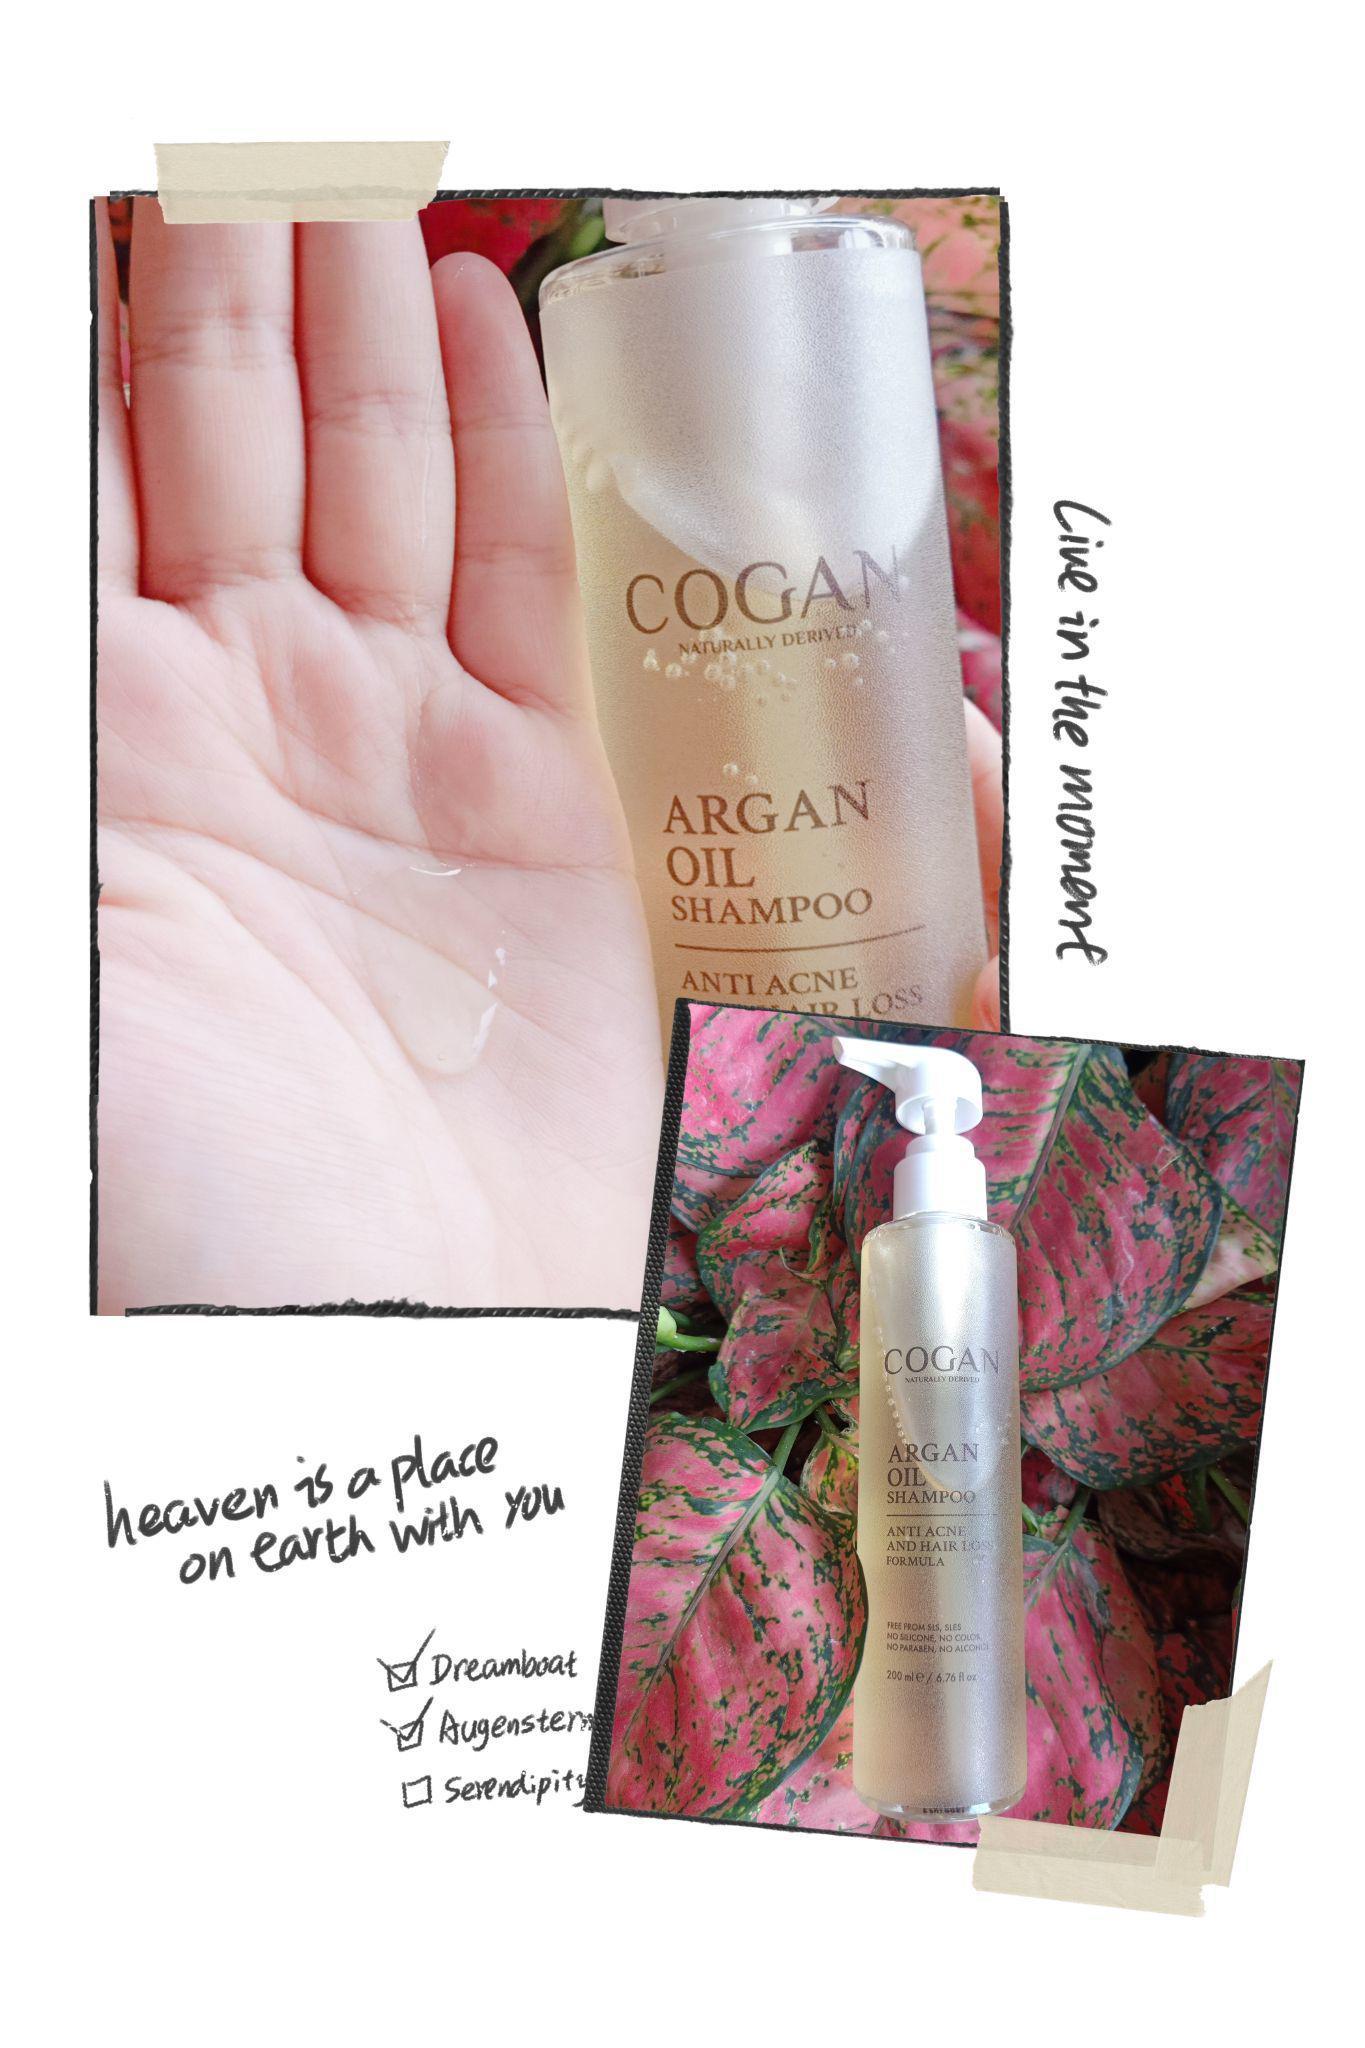 ภาพหน้าปก Review: COGAN Argan Oil Shampoo ที่:2